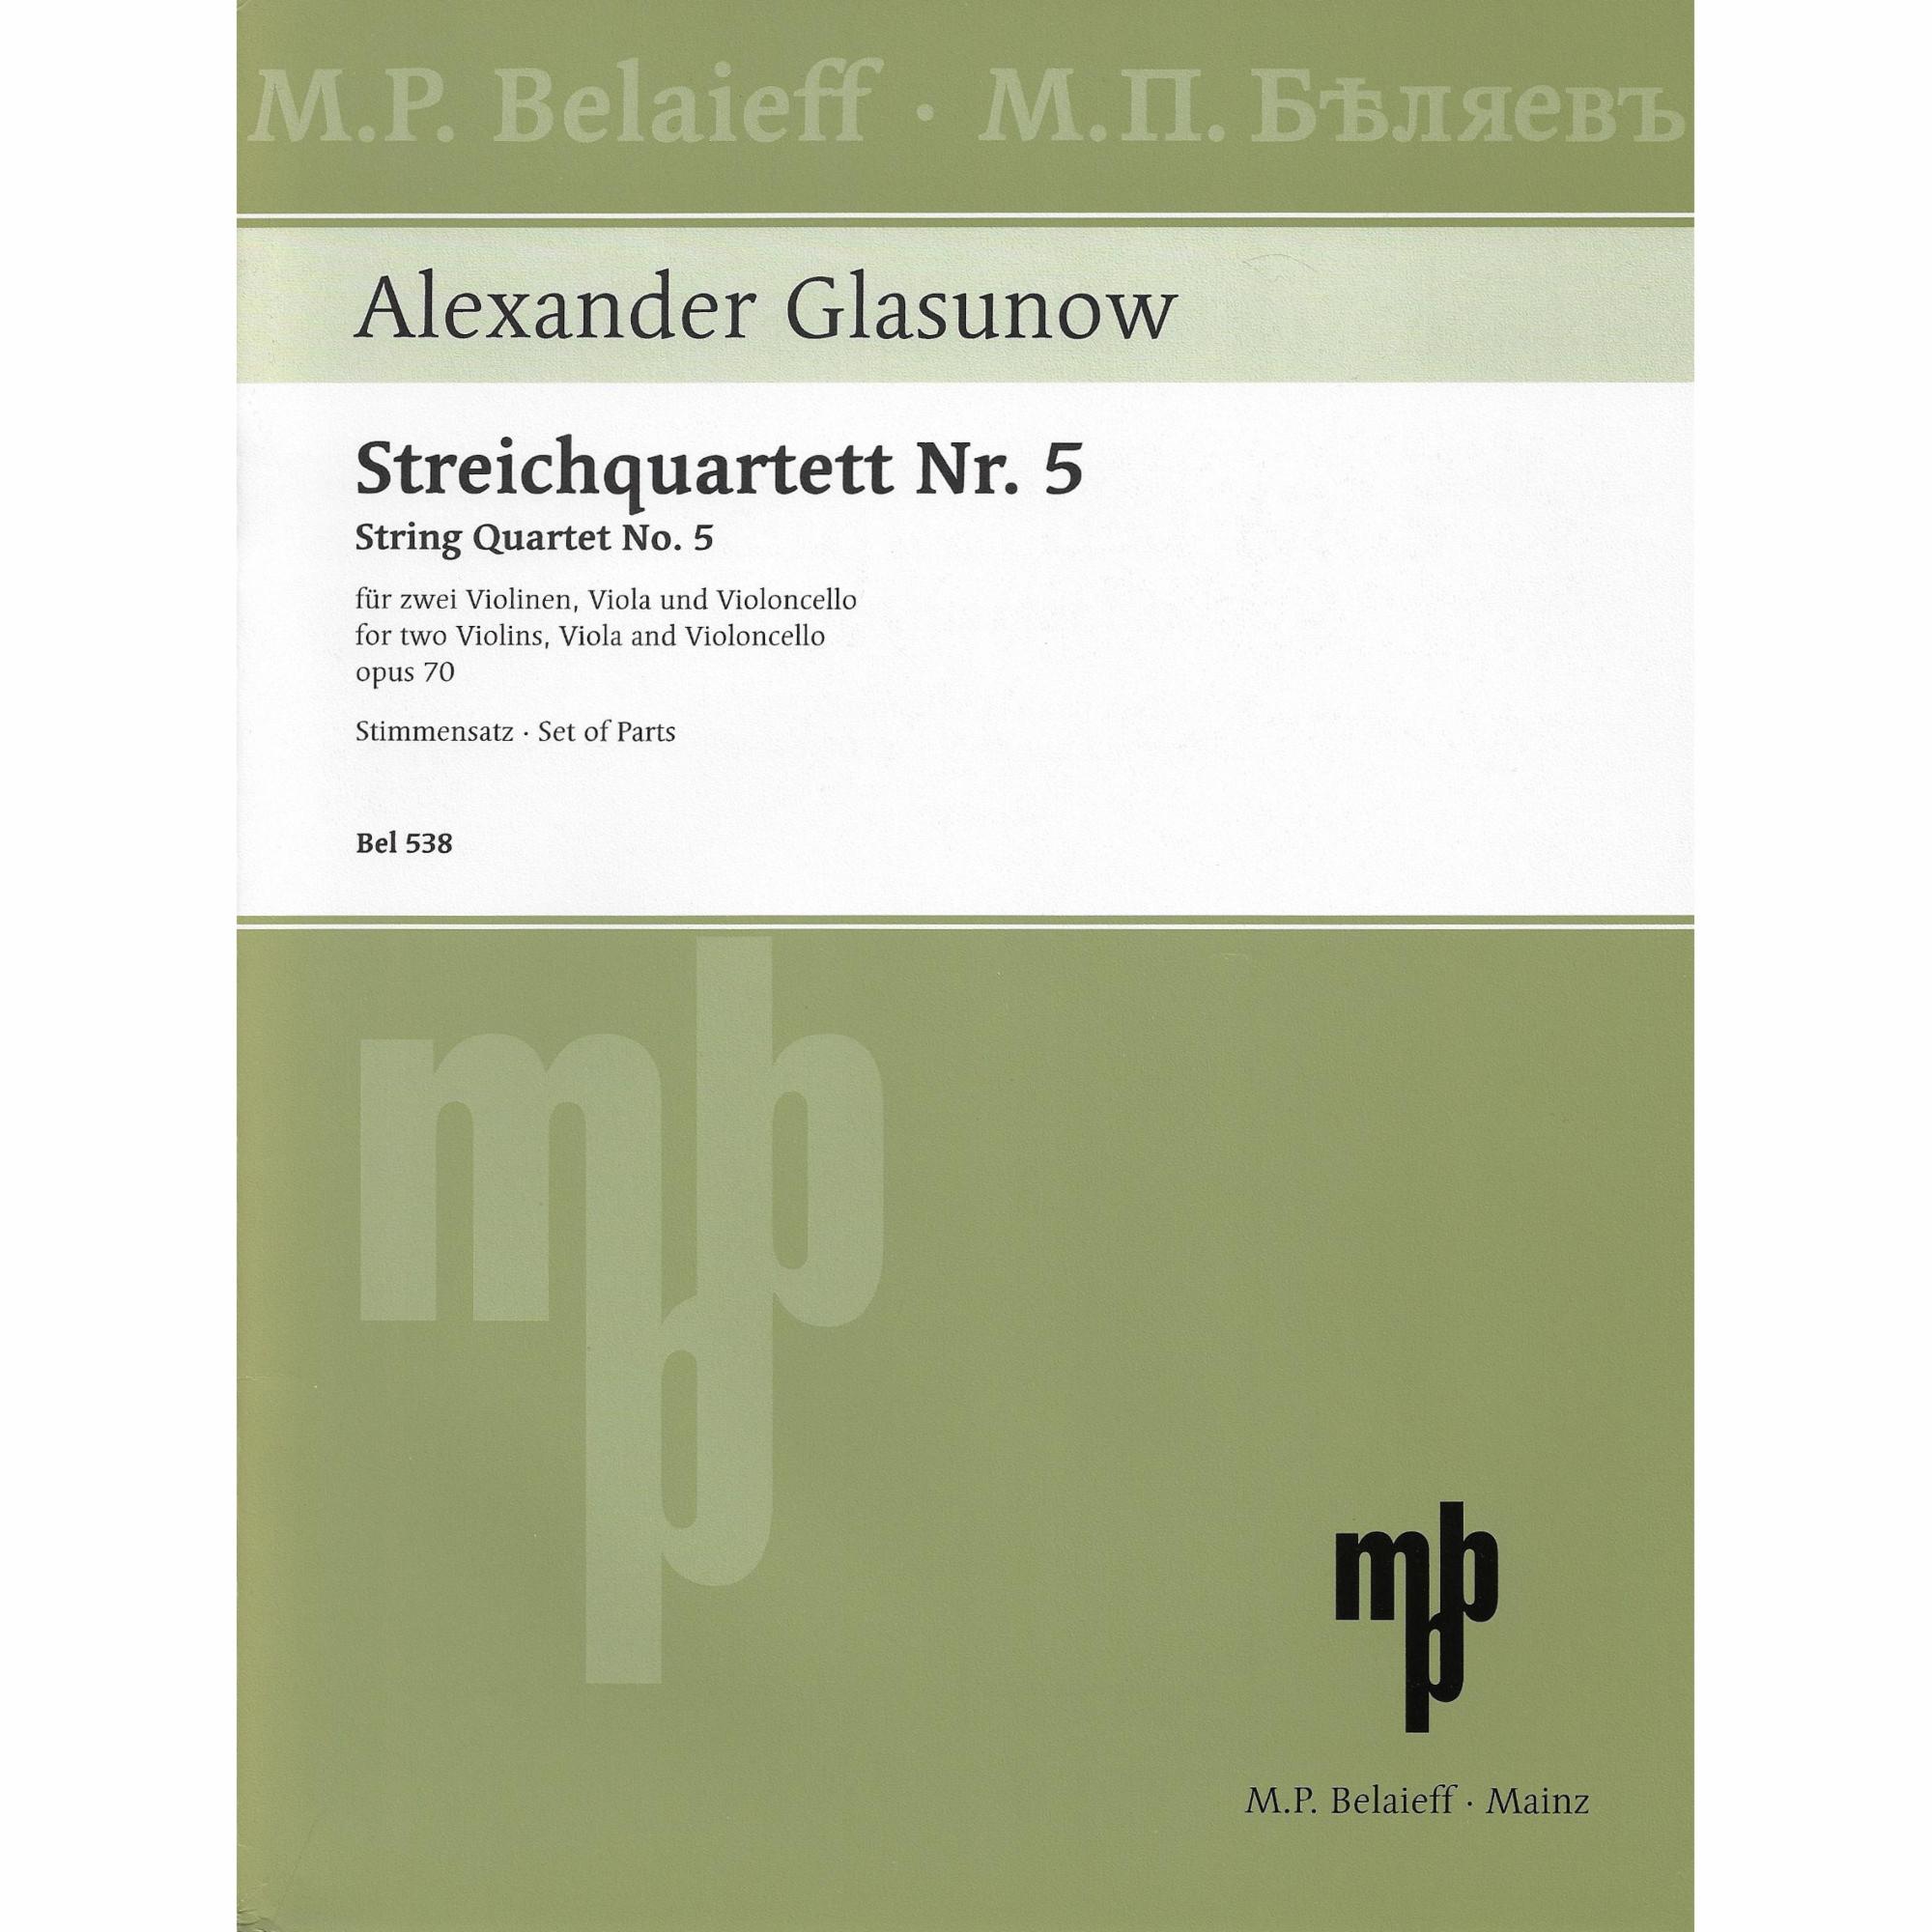 Glazunov -- String Quartet No. 5 in D Minor, Op. 70